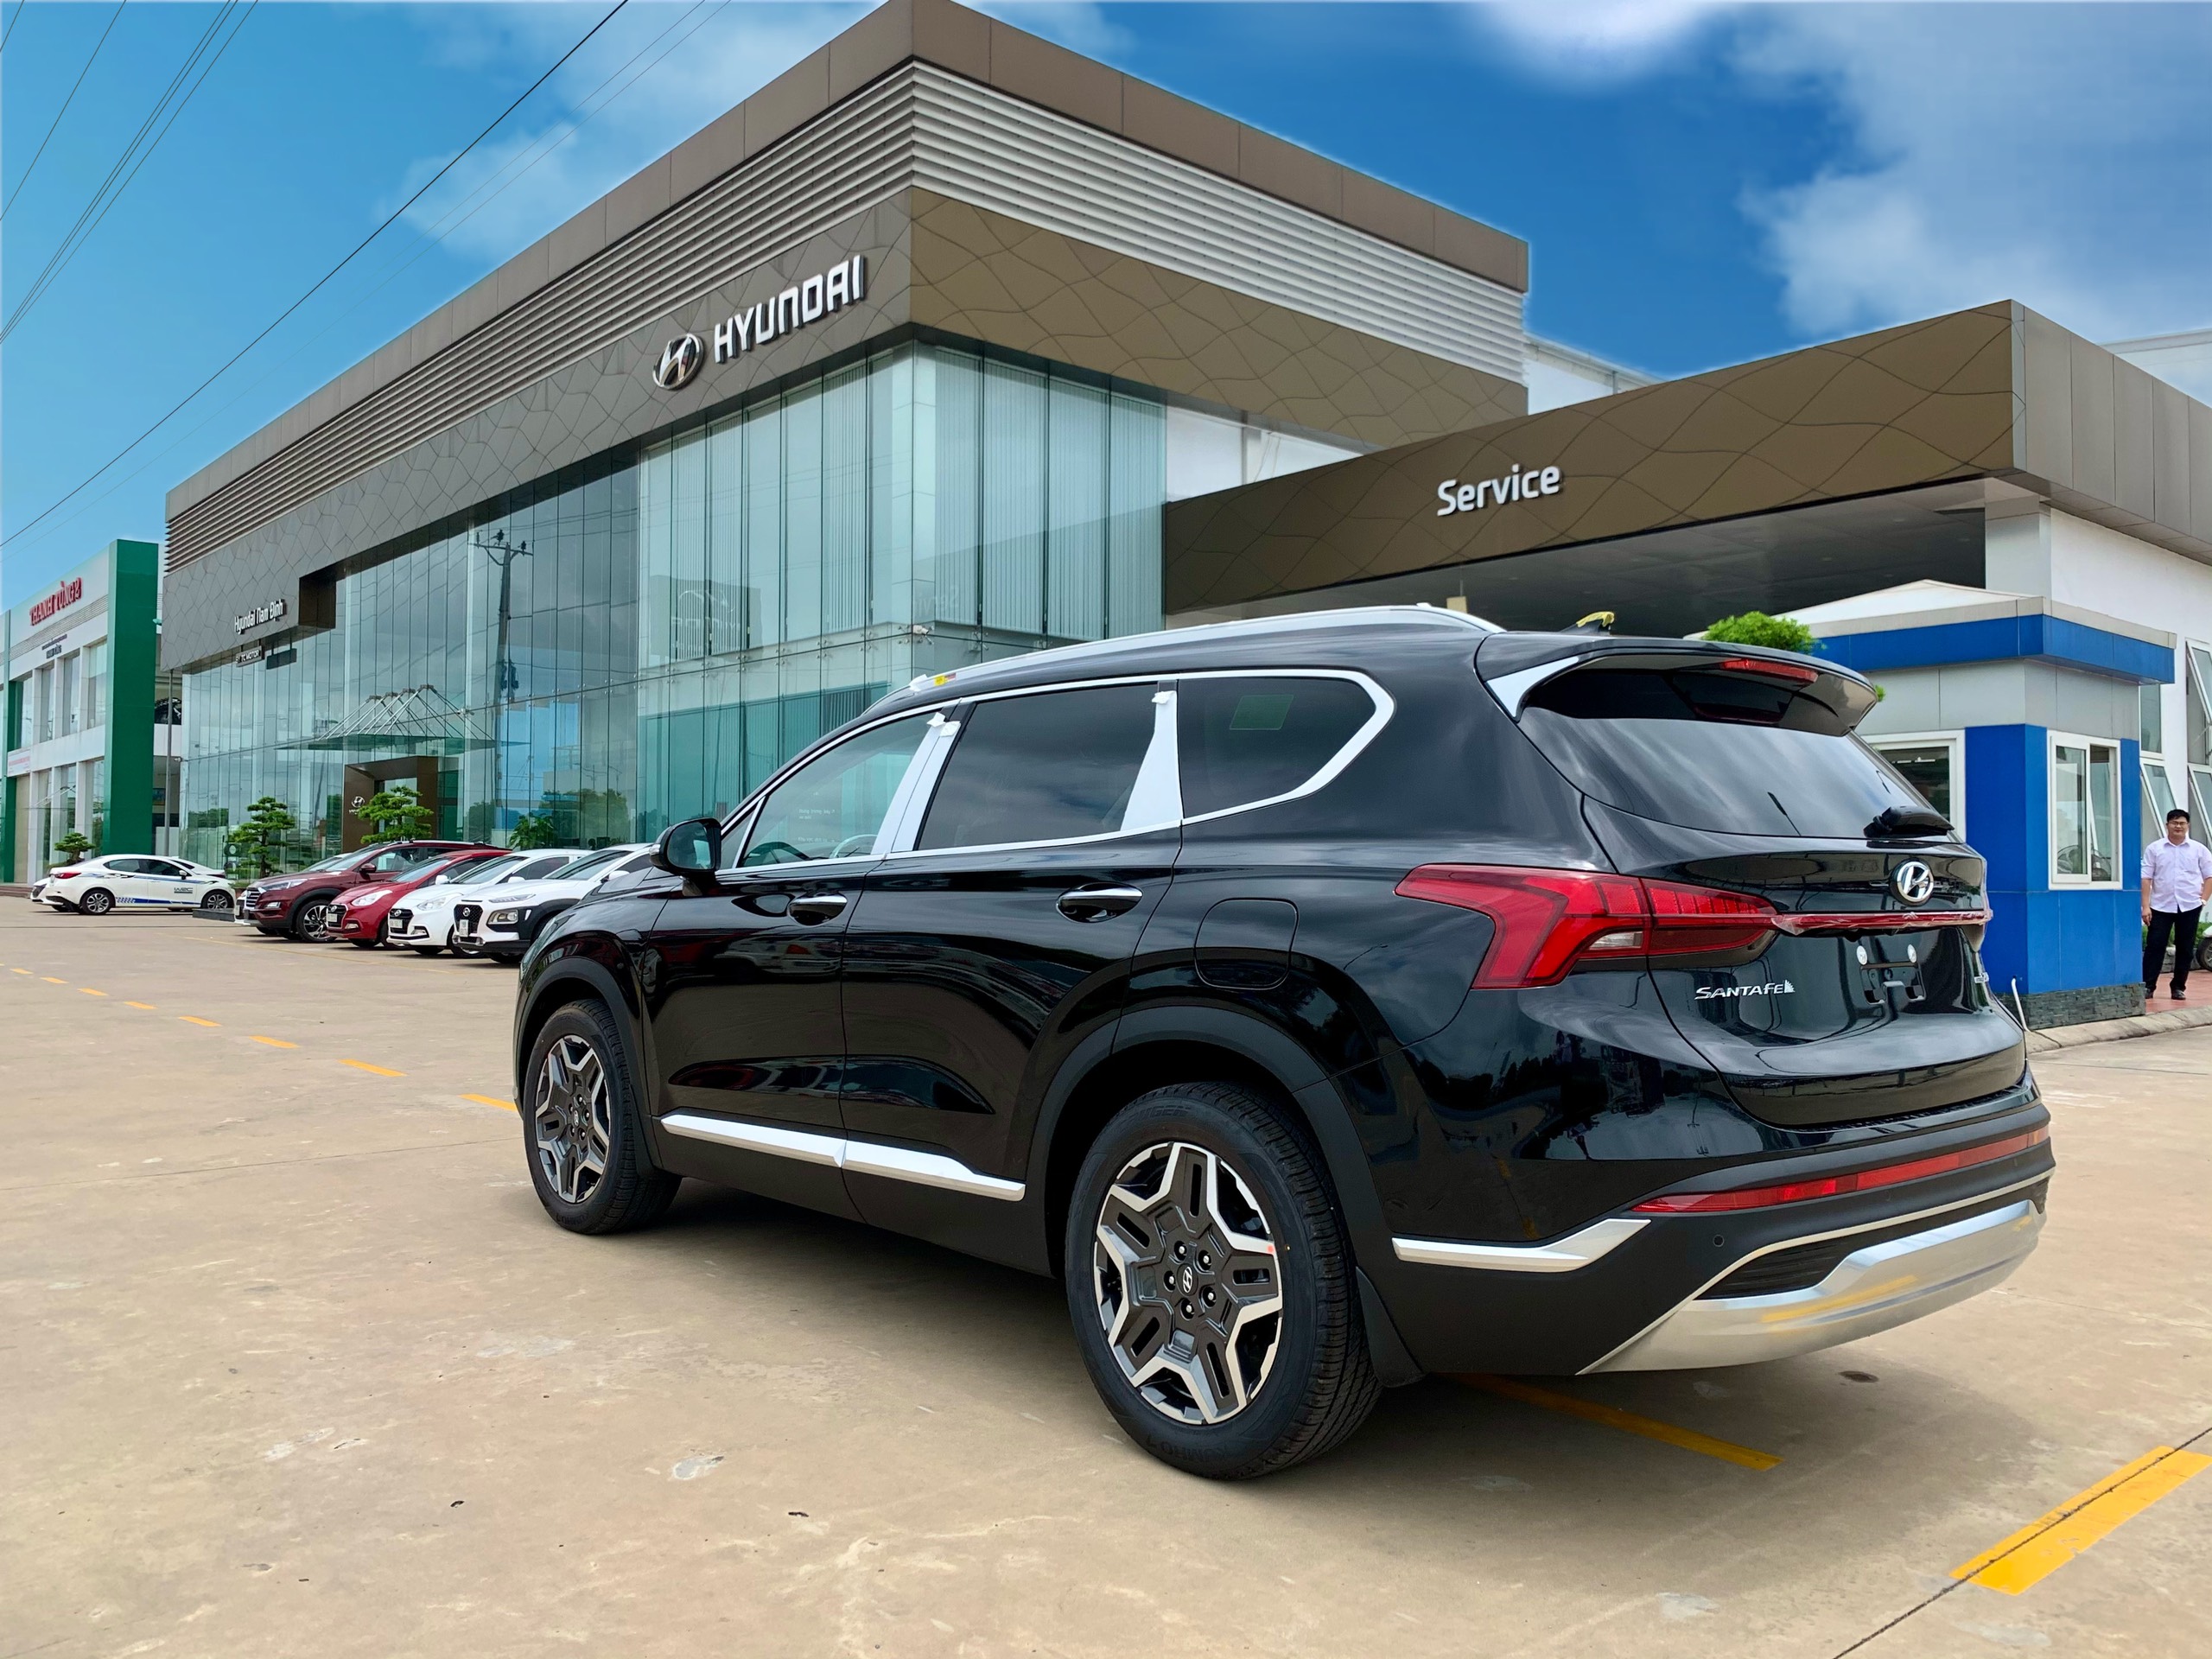 New Hyundai Santafe 2021 hiện đã có mặt tại Hyundai Nam Định